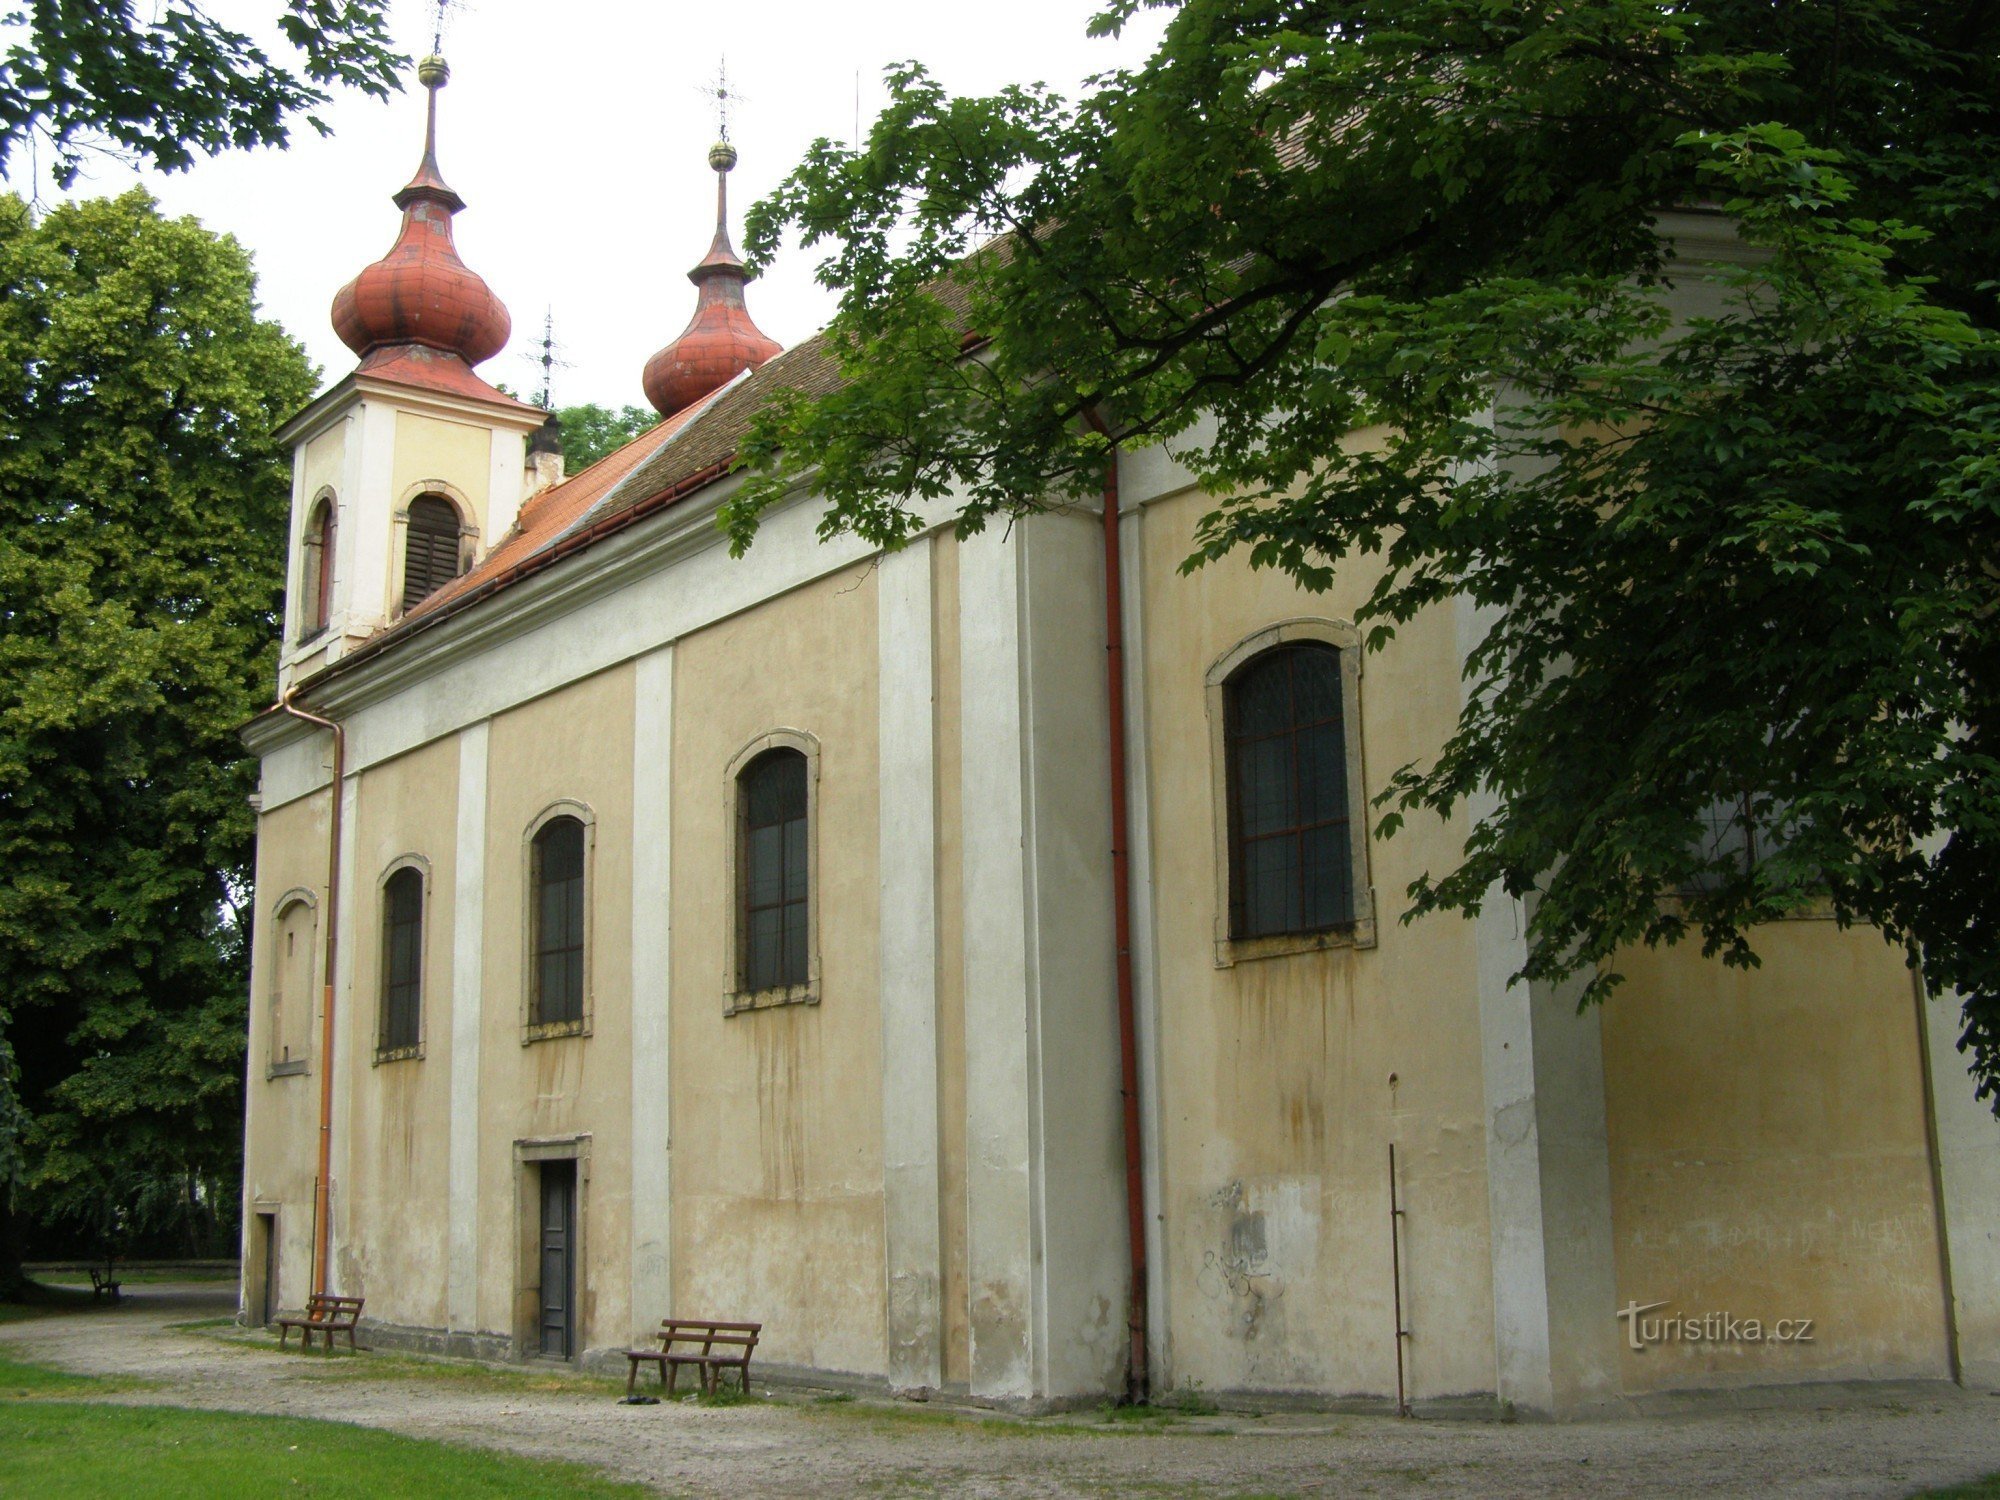 Nový Bydžov - Nhà thờ Chúa Ba Ngôi